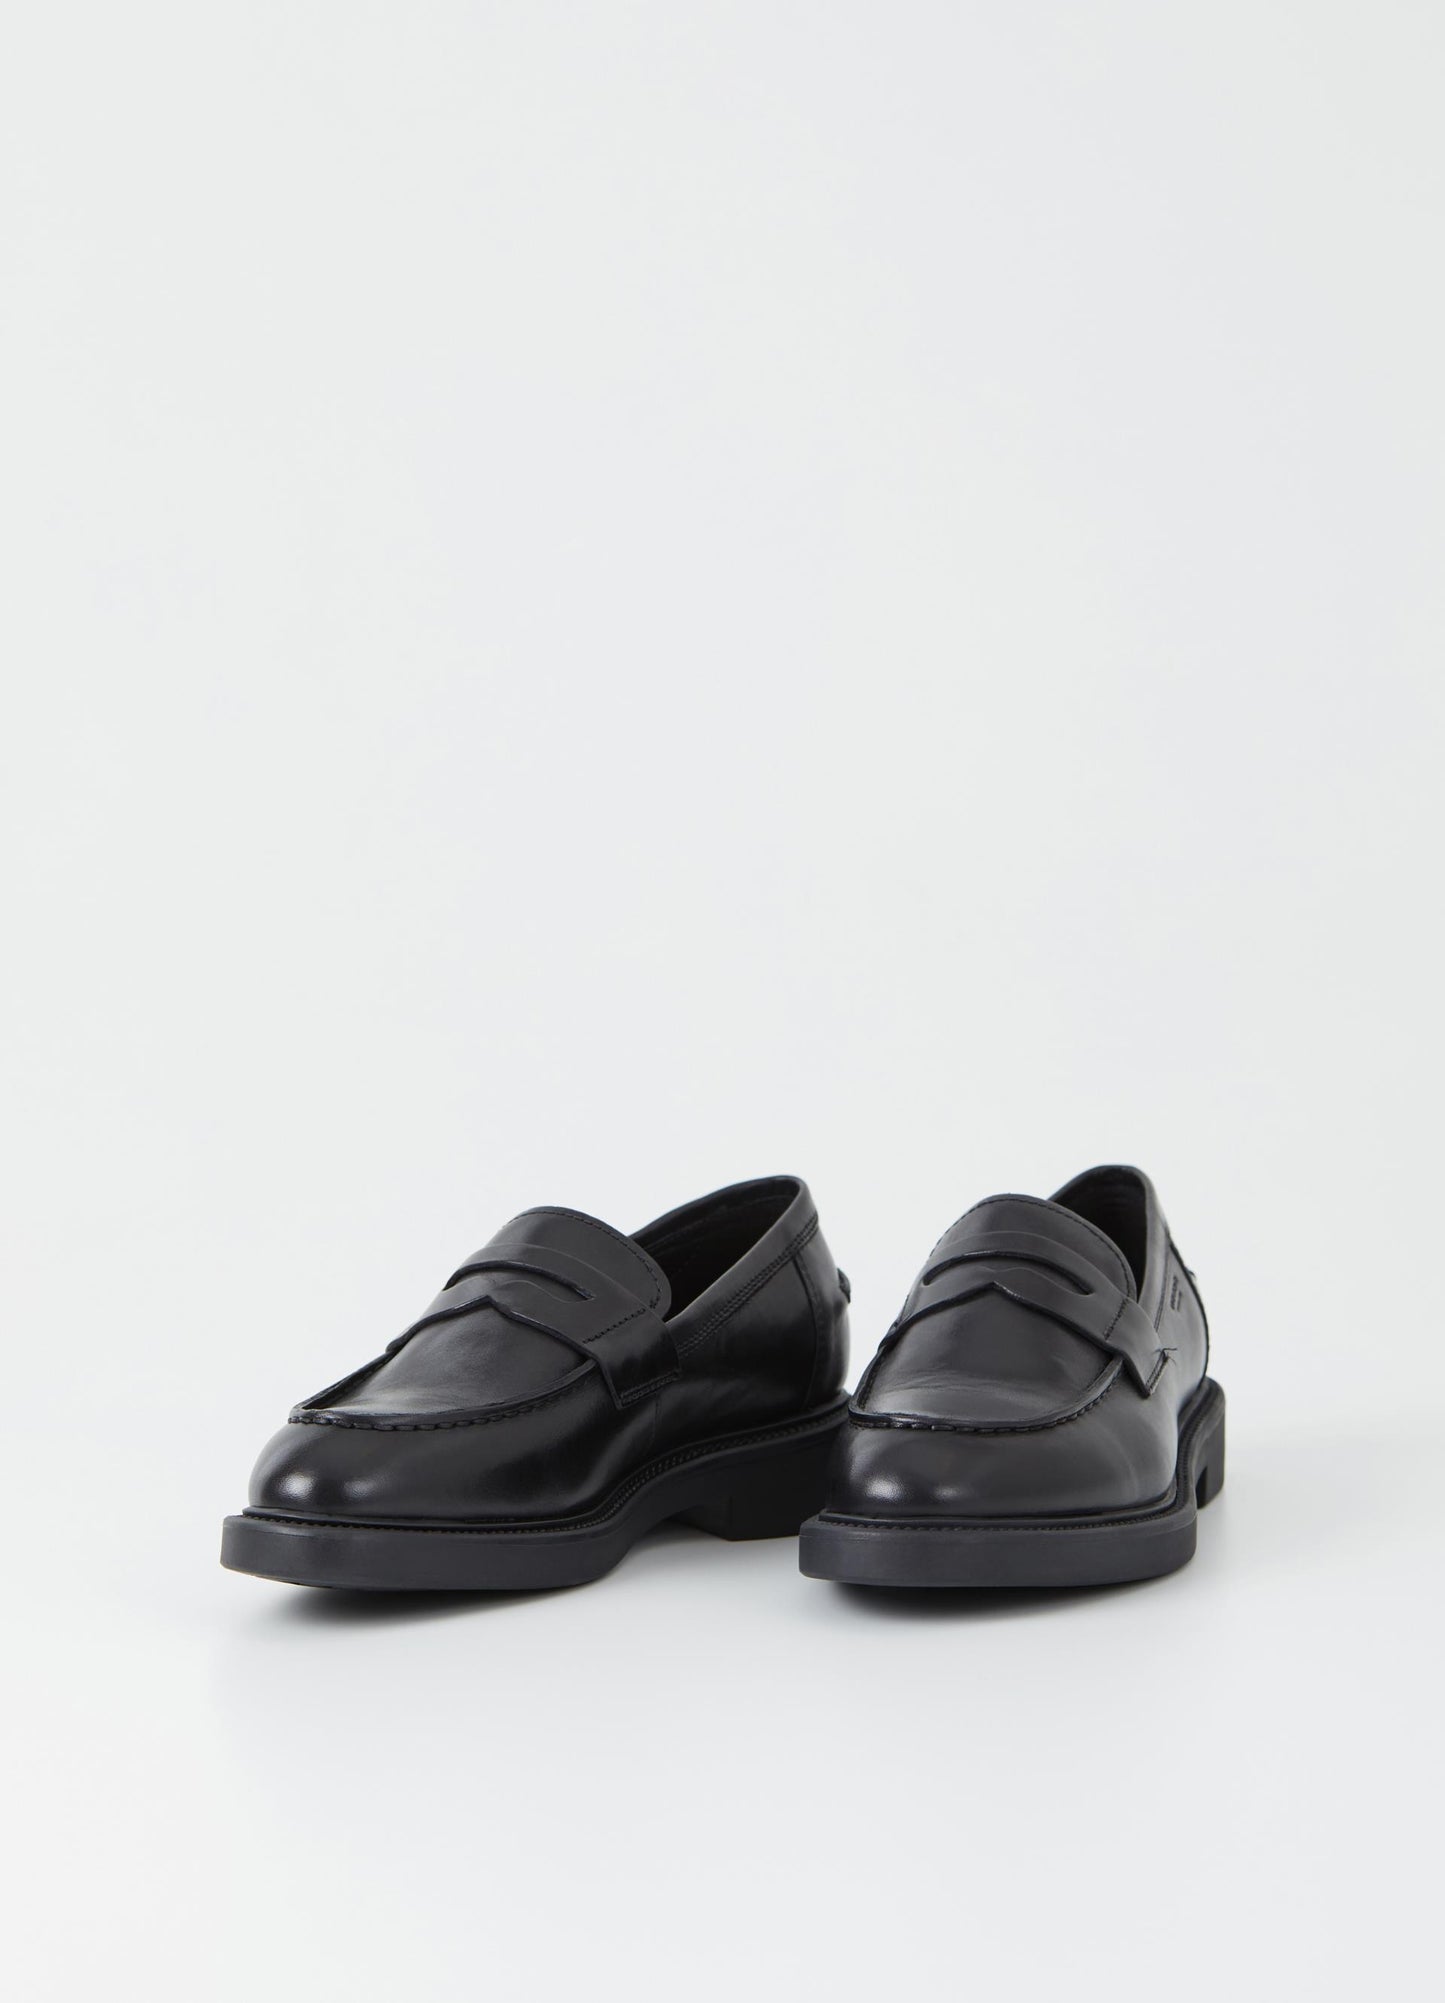 Vagabond Alex W black loafer shoe - Imeldas Shoes Norwich